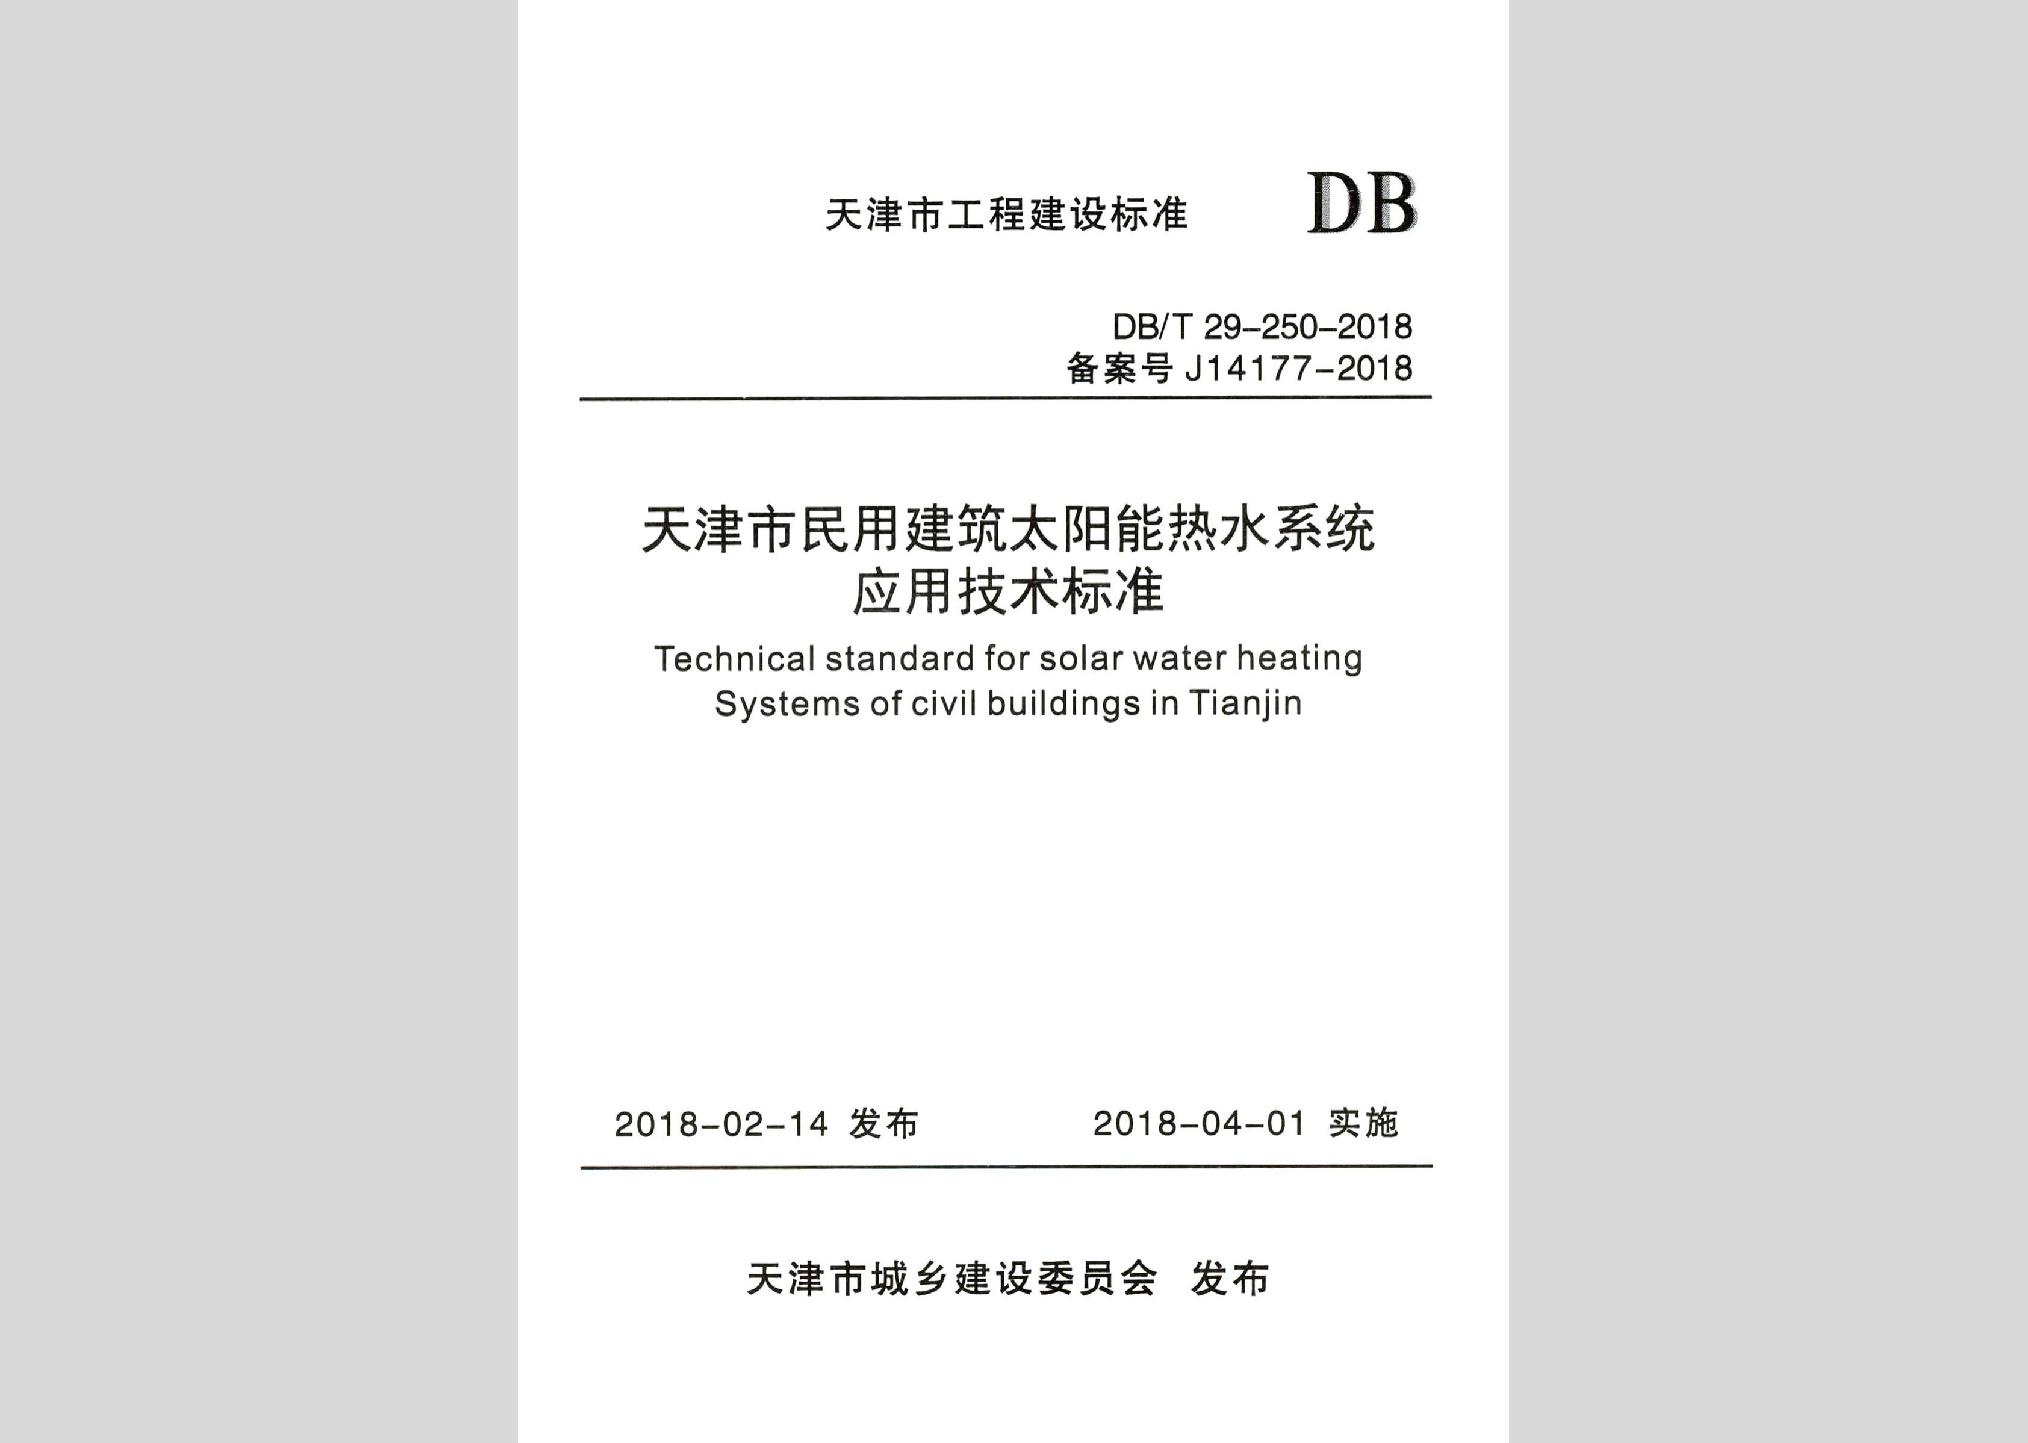 DB/T29-250-2018：天津市民用建筑太阳能热水系统应用技术标准